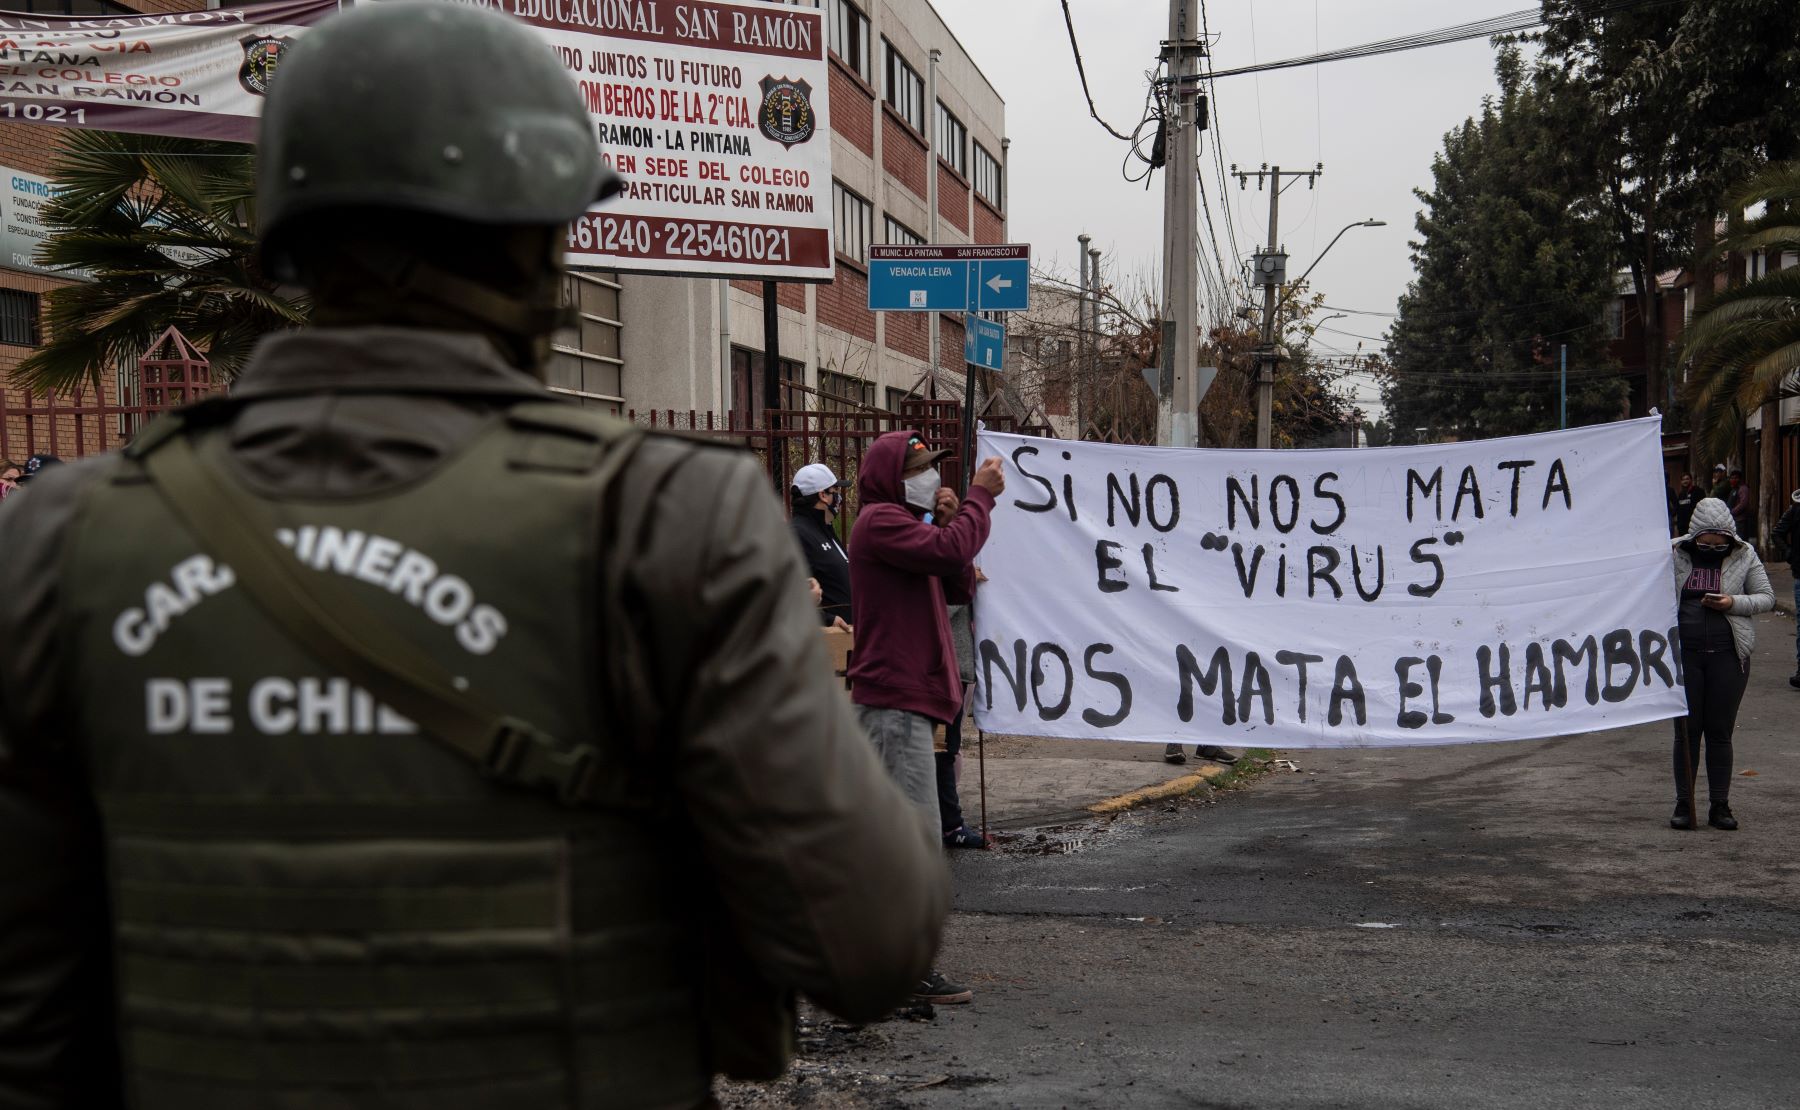 Manifestantes protestam em Santiago, no Chile, contra as dificulades em conseguir auxílio emergencial durante a pandemia: "Se não nos mata o vírus, nos mata a fome" (Foto: Martin Bernetti/AFP)